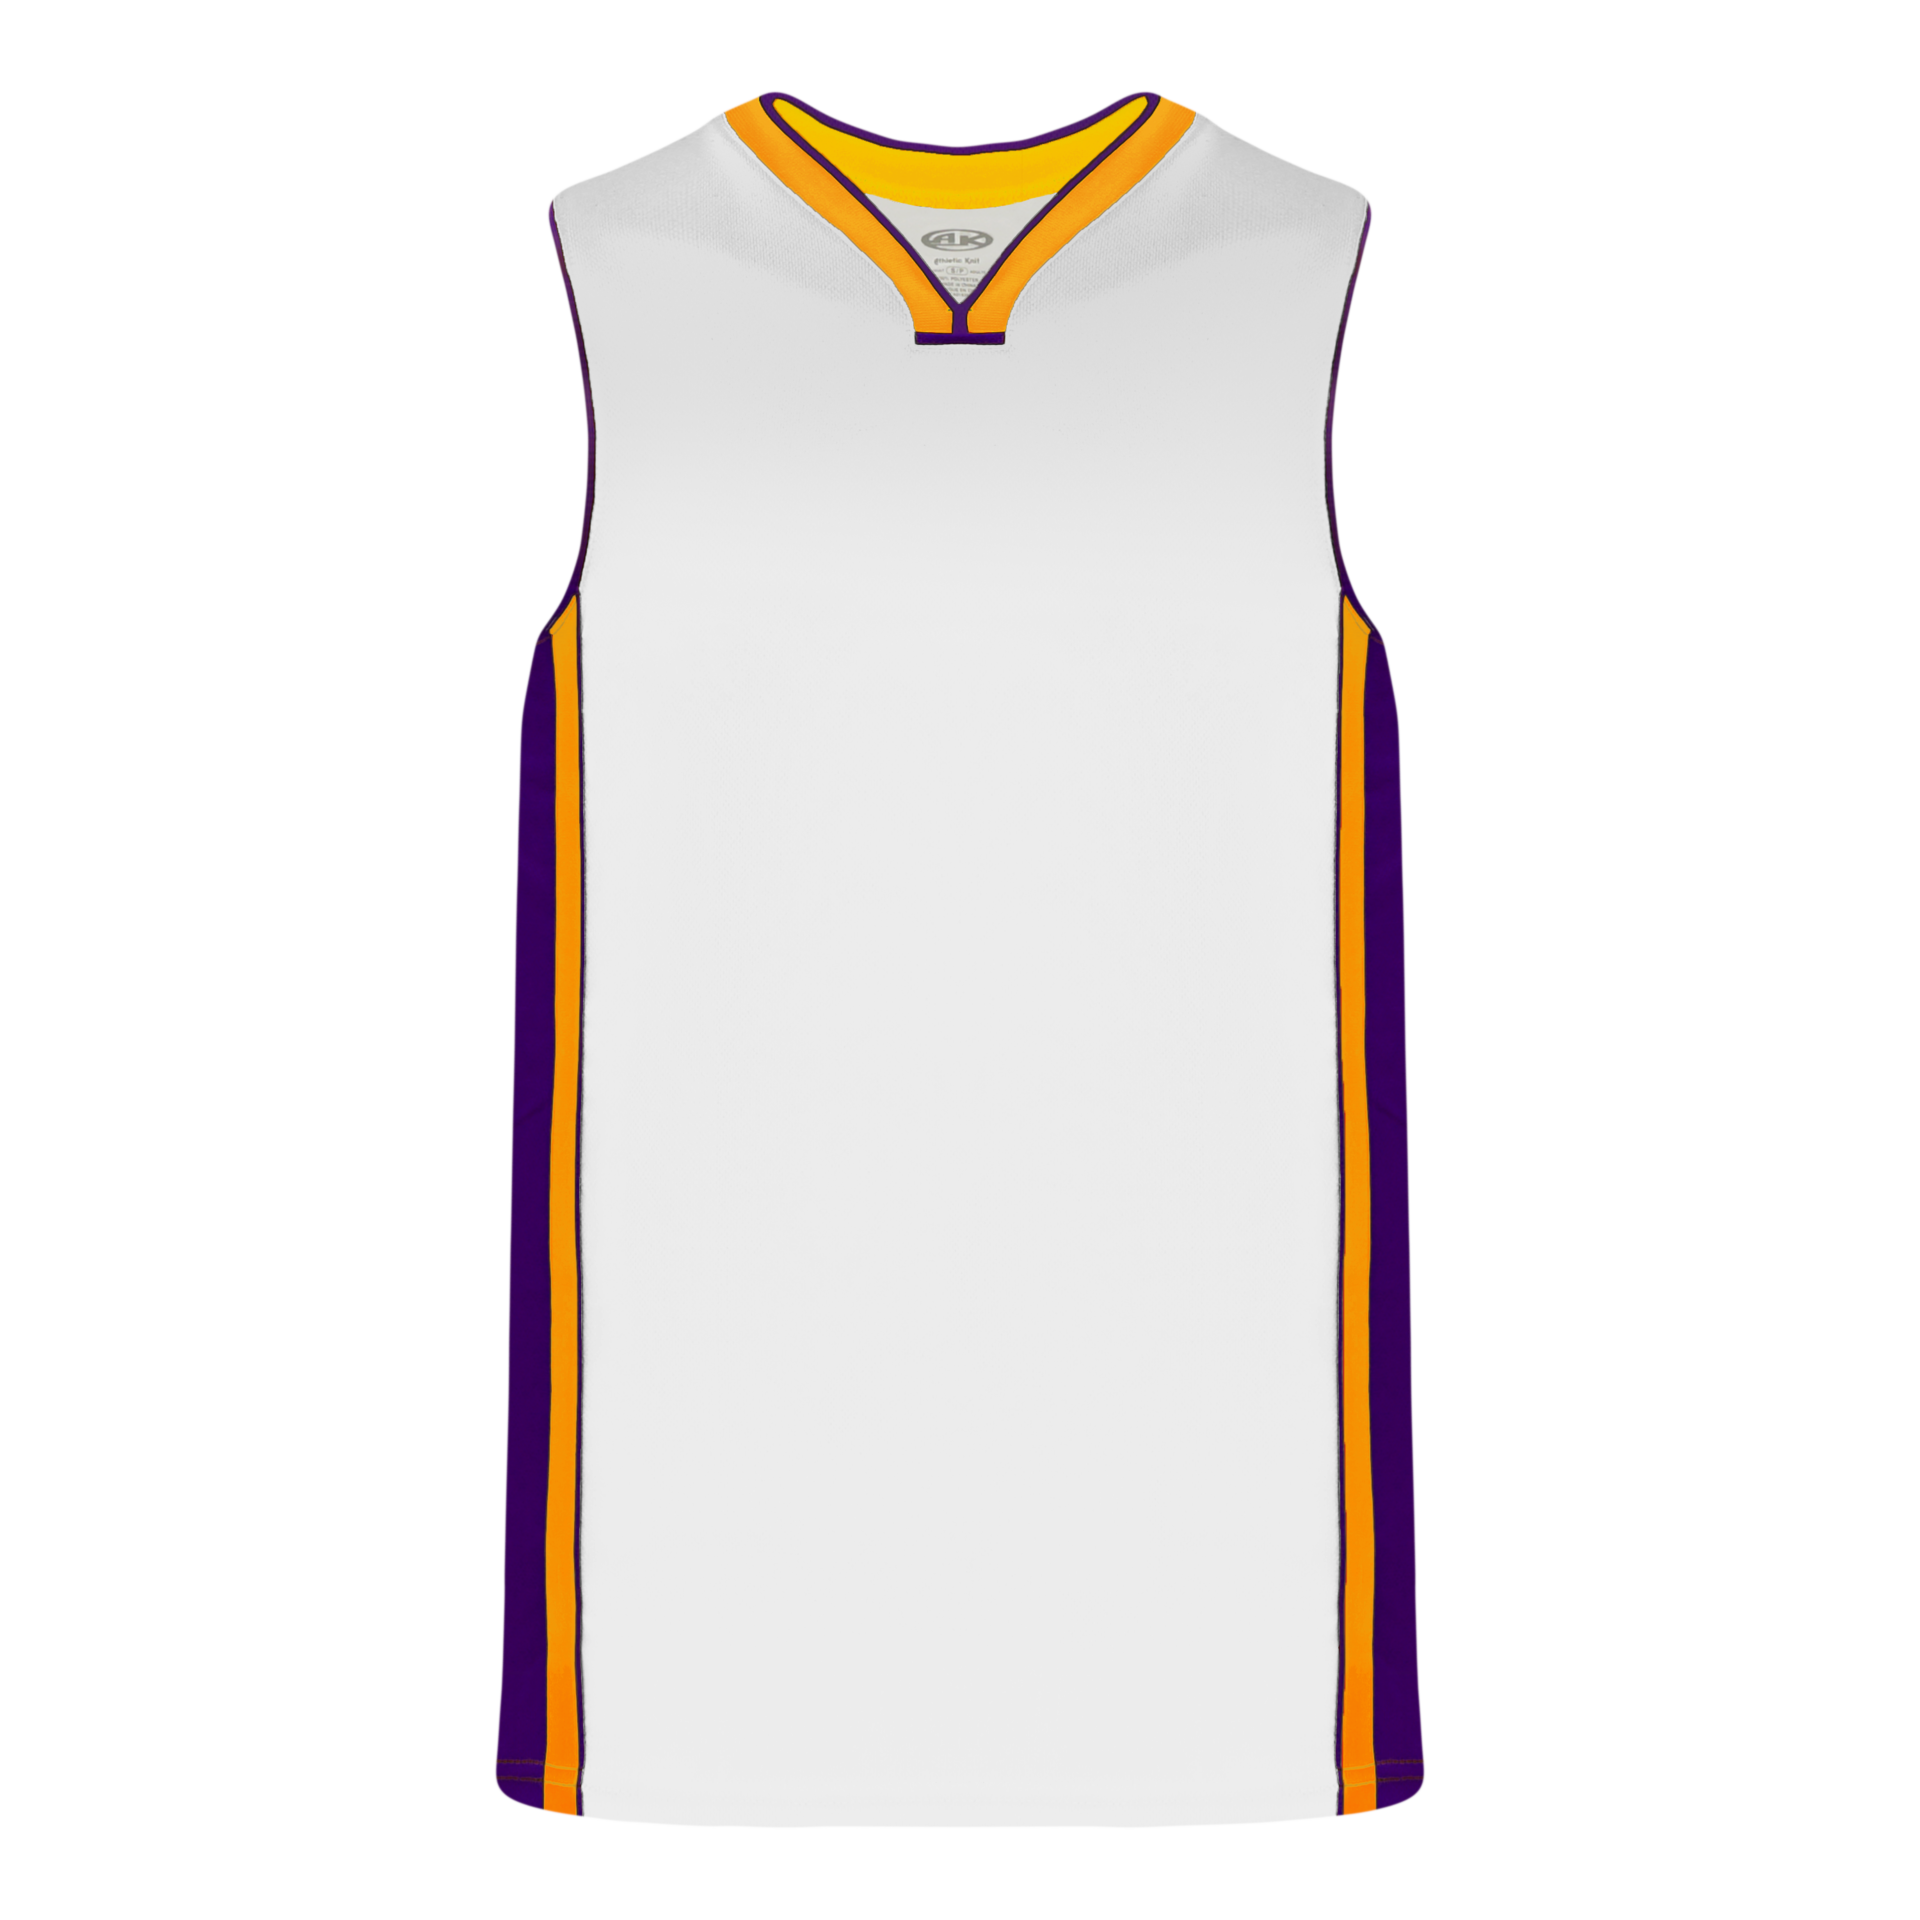 Blank LA Lakers Practice Jerseys, Lakers Purple & White